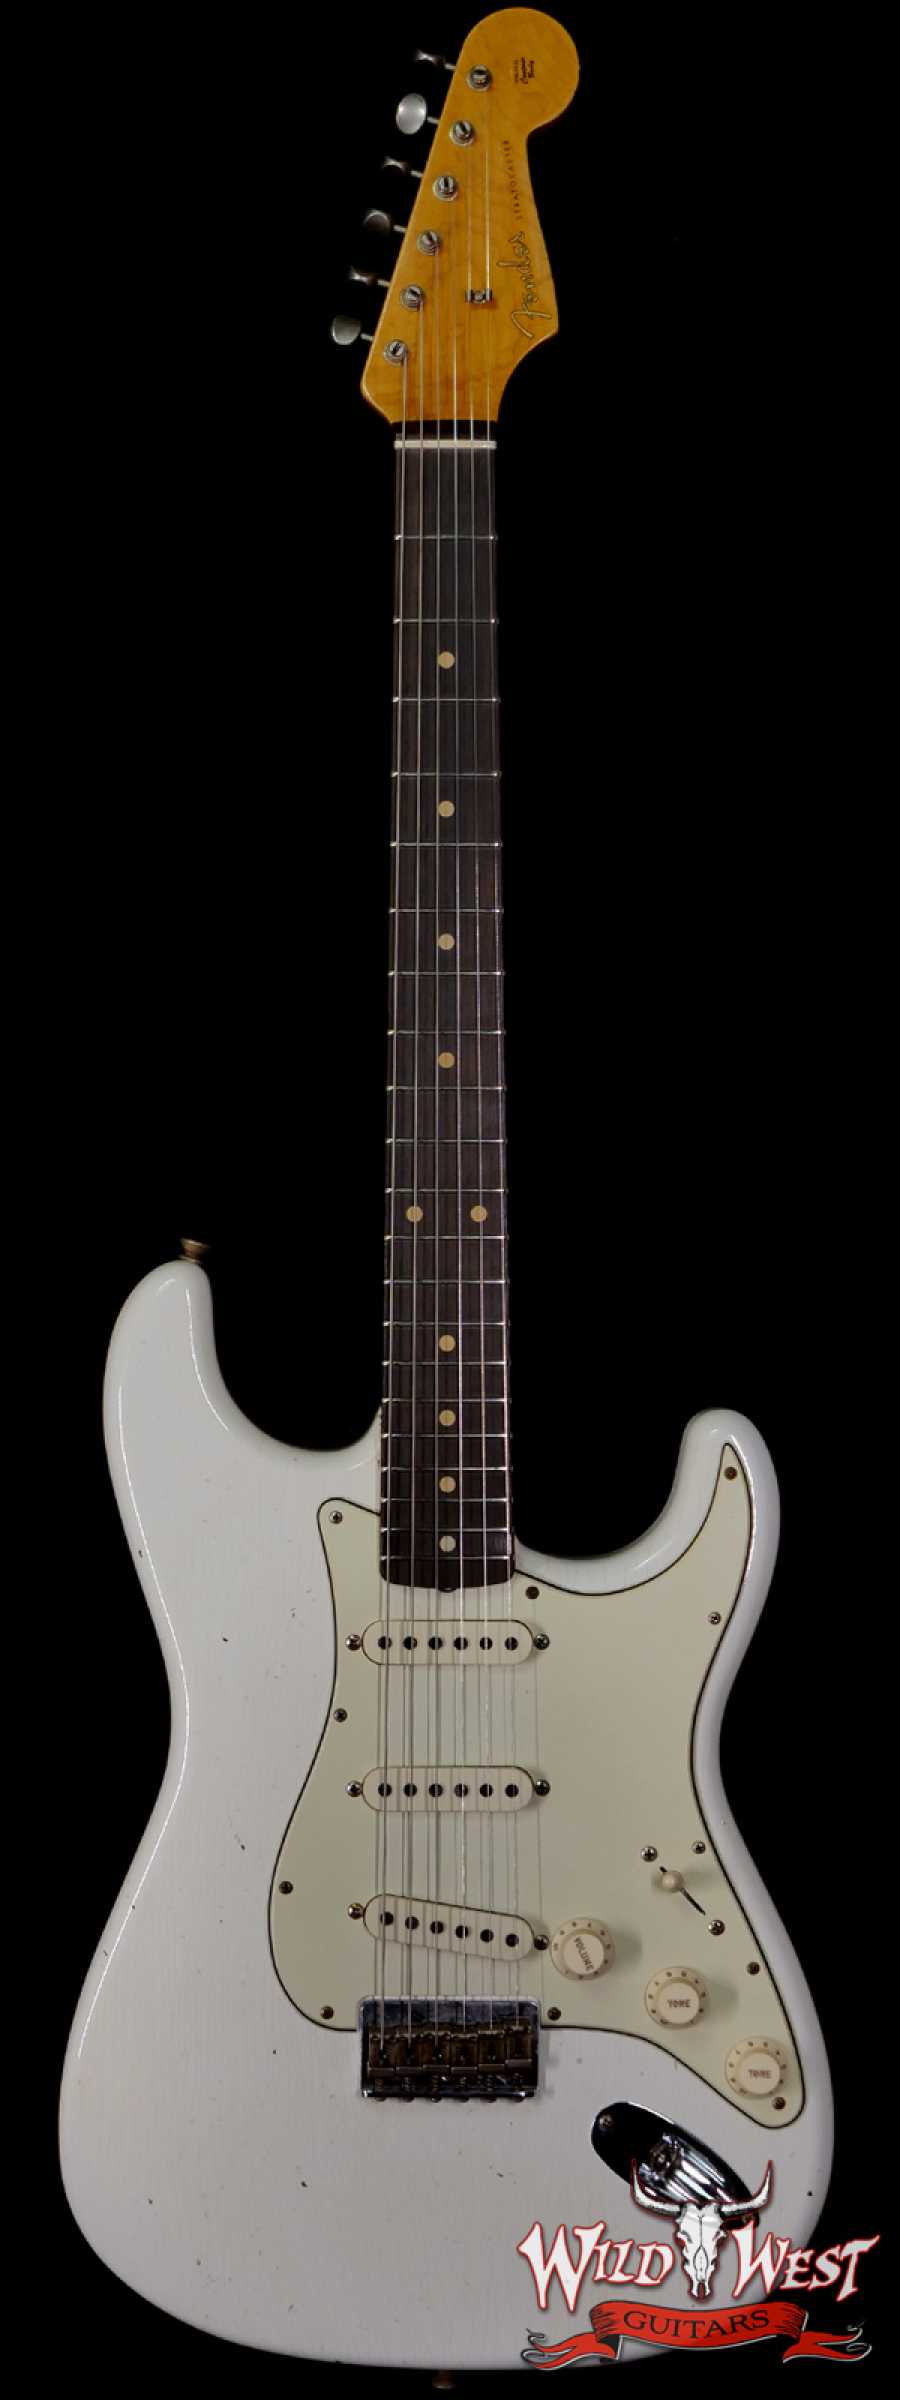 Fender custom shop Stratocaster 保証書付き www.krzysztofbialy.com